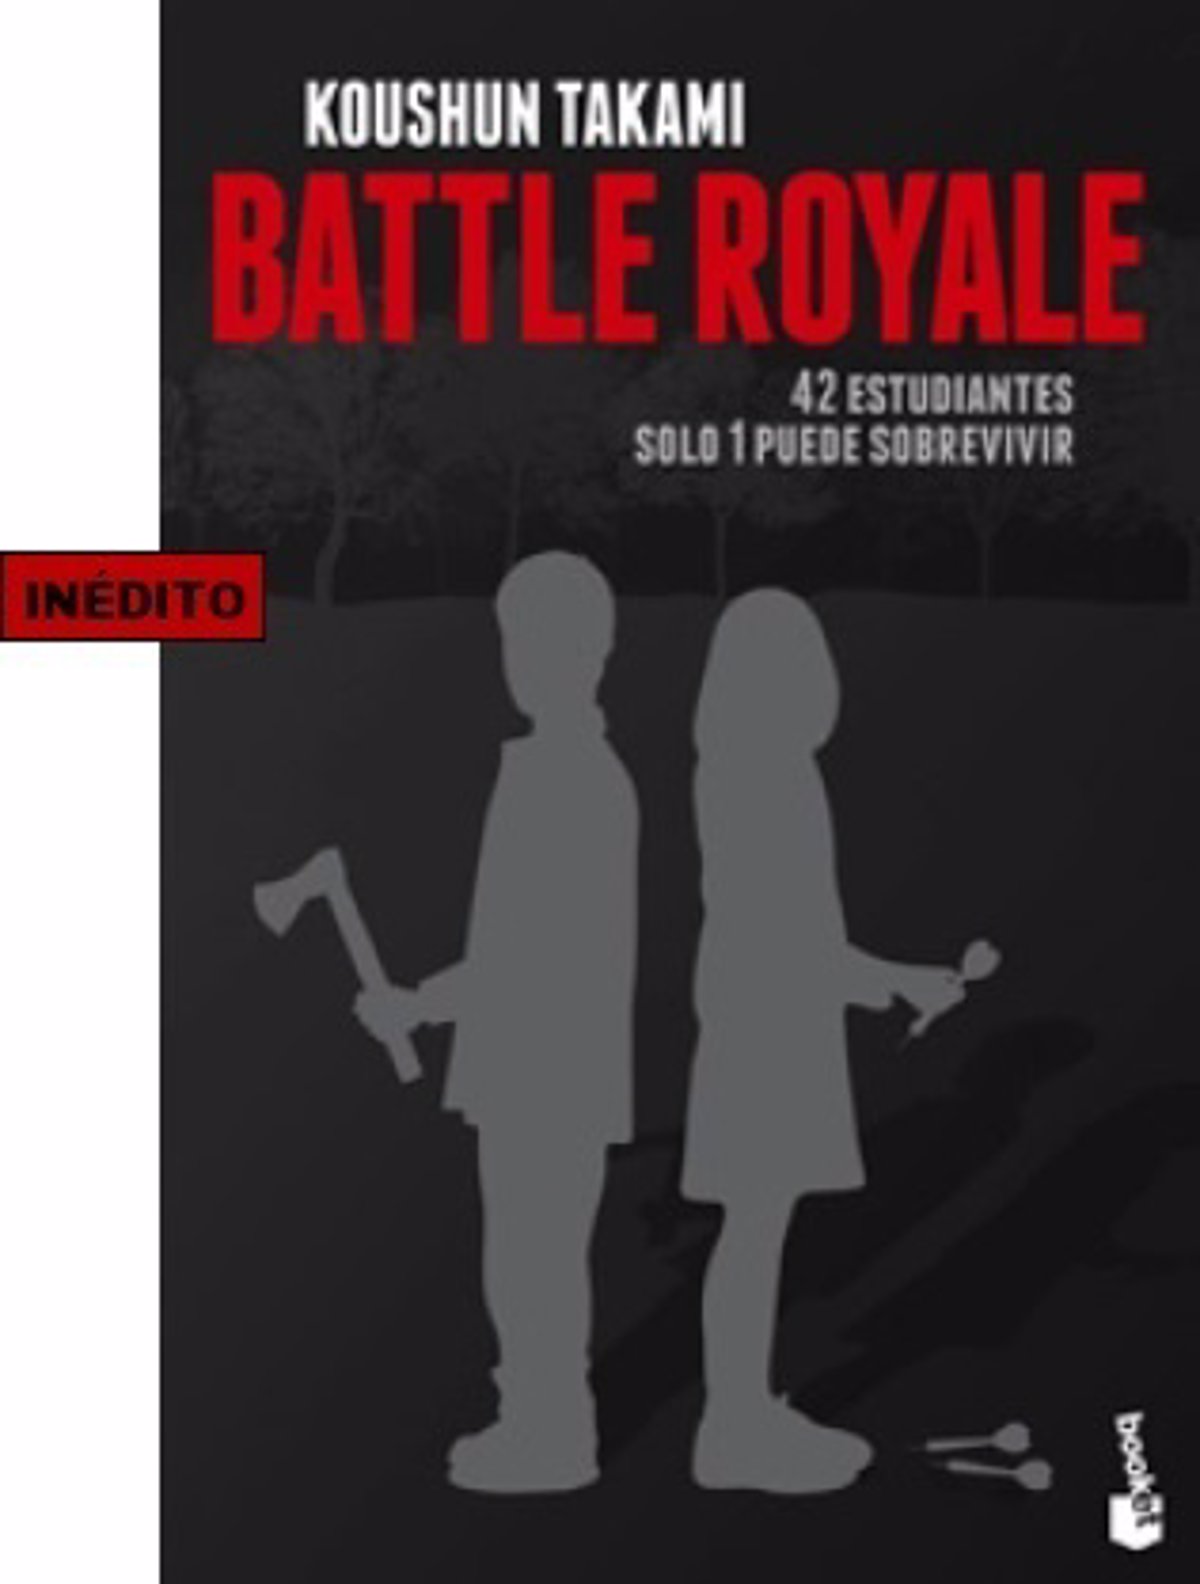 Battle Royale La Sangrienta Obra Que Inspiro Los Juegos Del Hambre Llega A Espana - roblox juegos del hambre